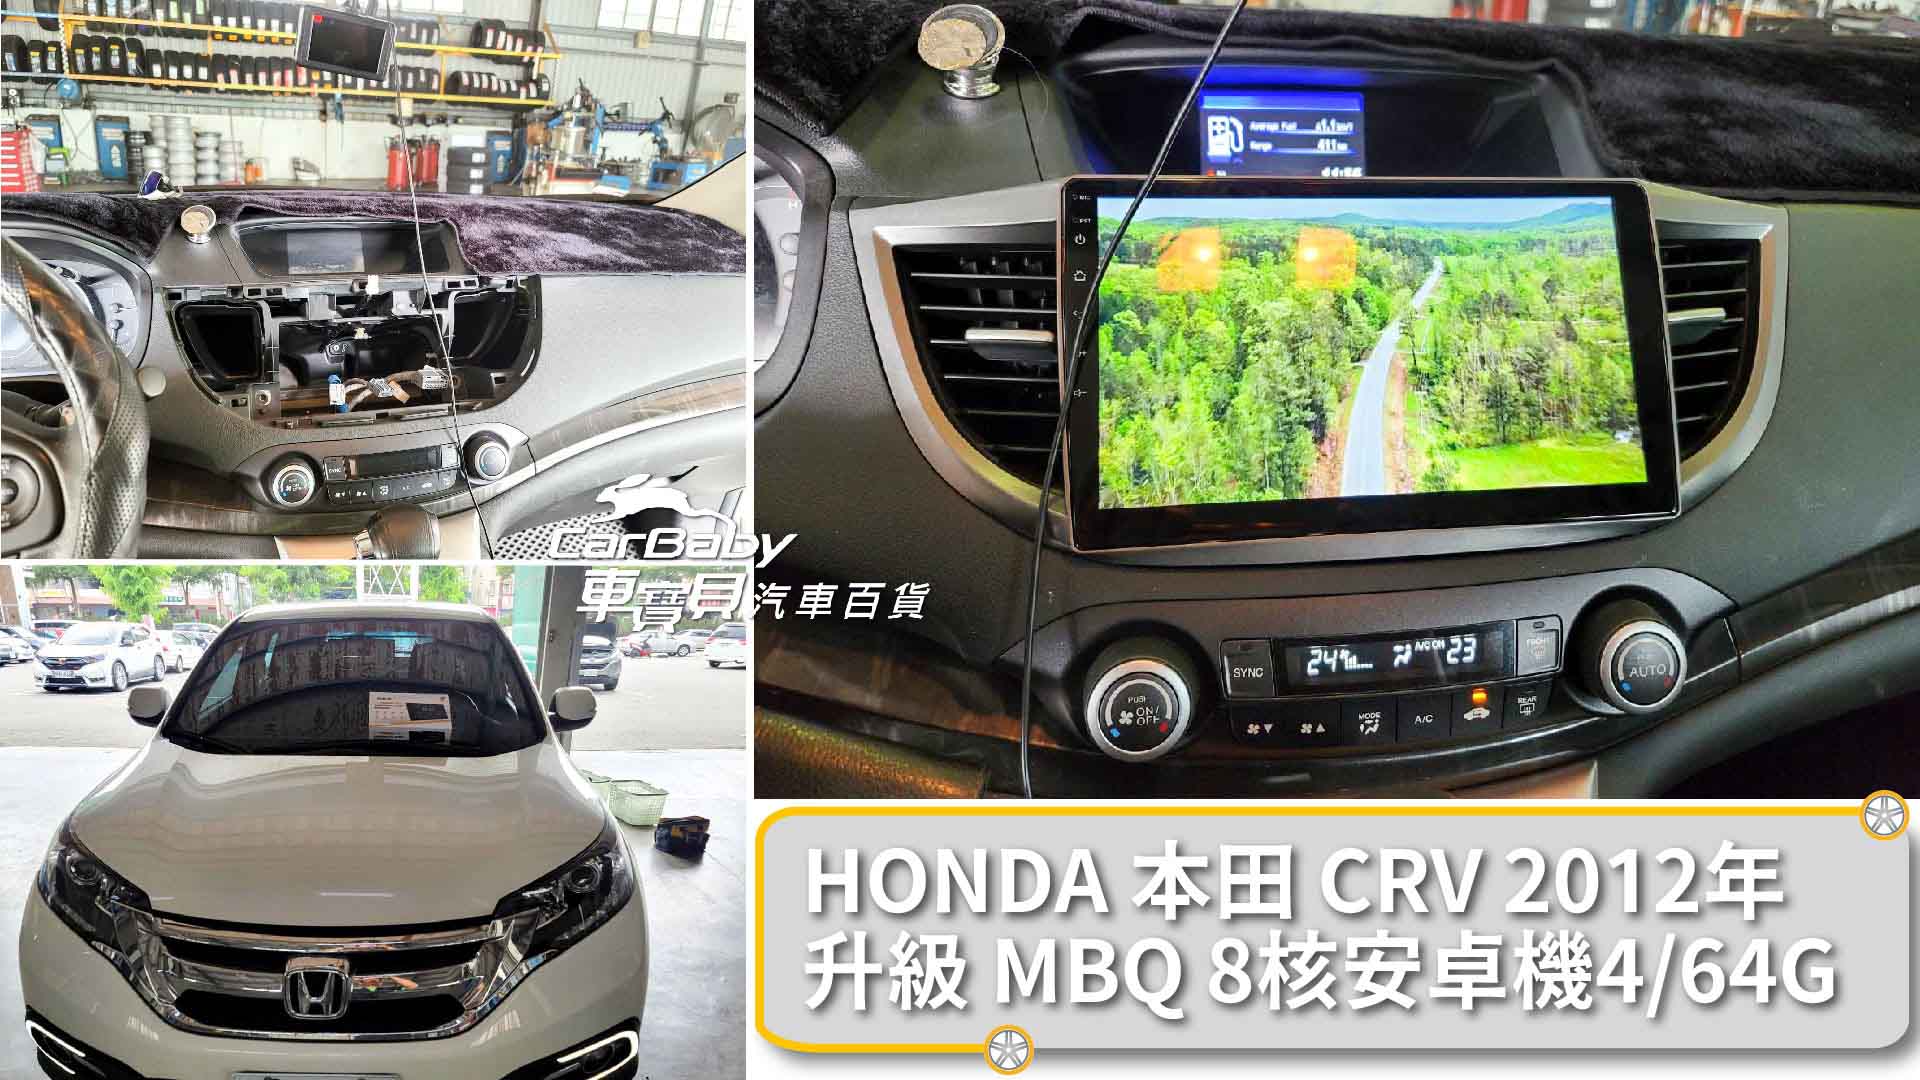 HONDA本田CRV 升級 MBQ 8核心4+64G安卓主機